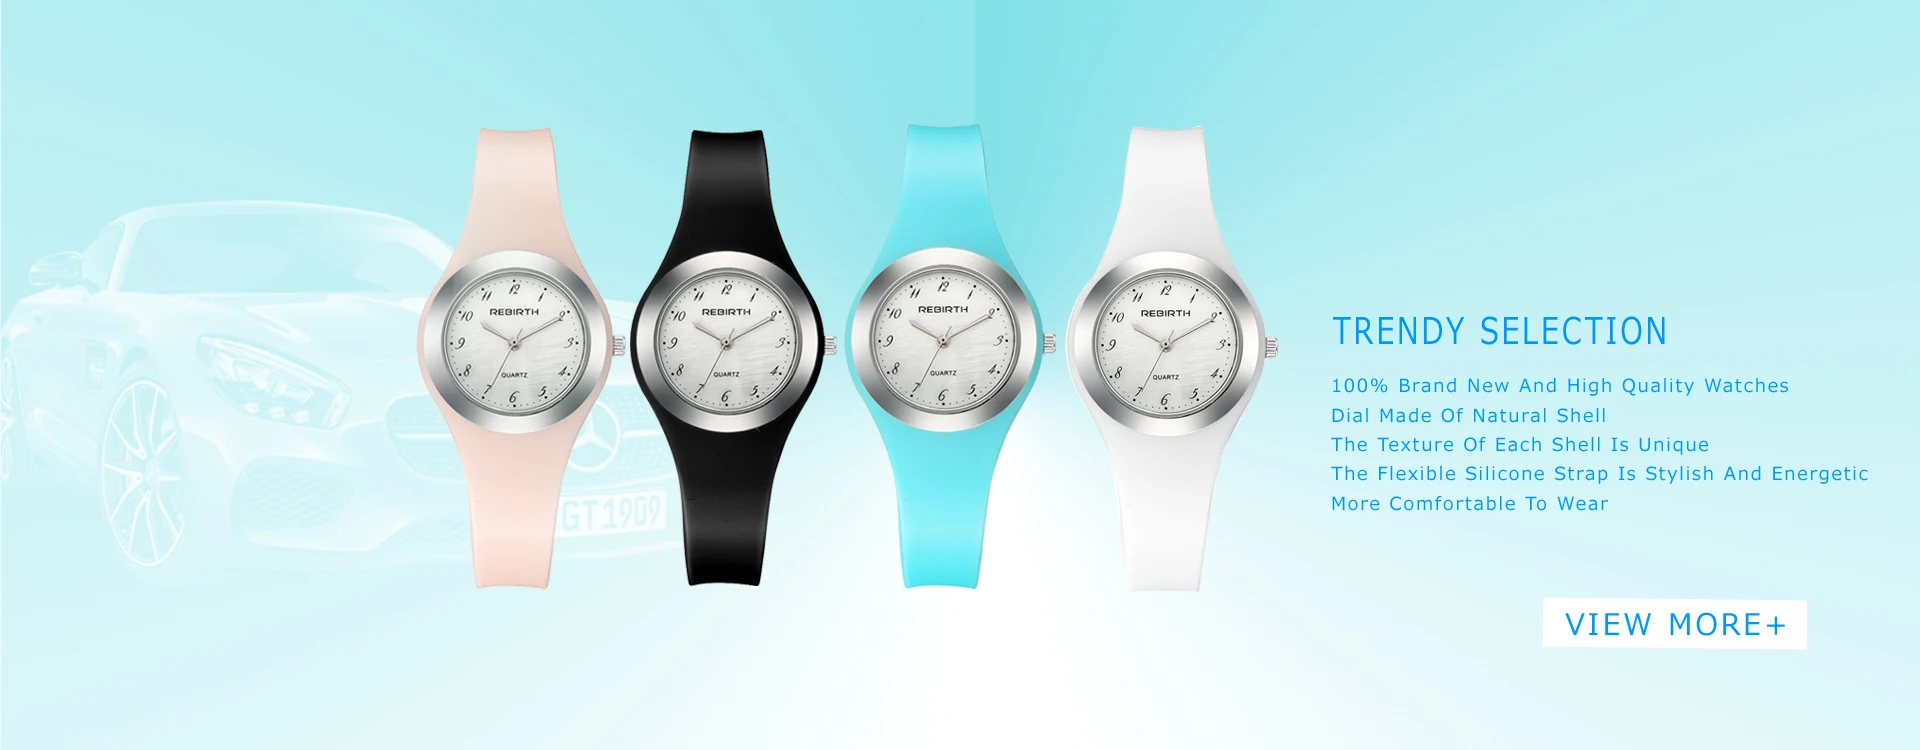 Женские наручные часы силиконовые женские часы повседневные аналоговые кварцевые женские часы Лидирующий бренд роскошные часы со стразами студенческие стильные